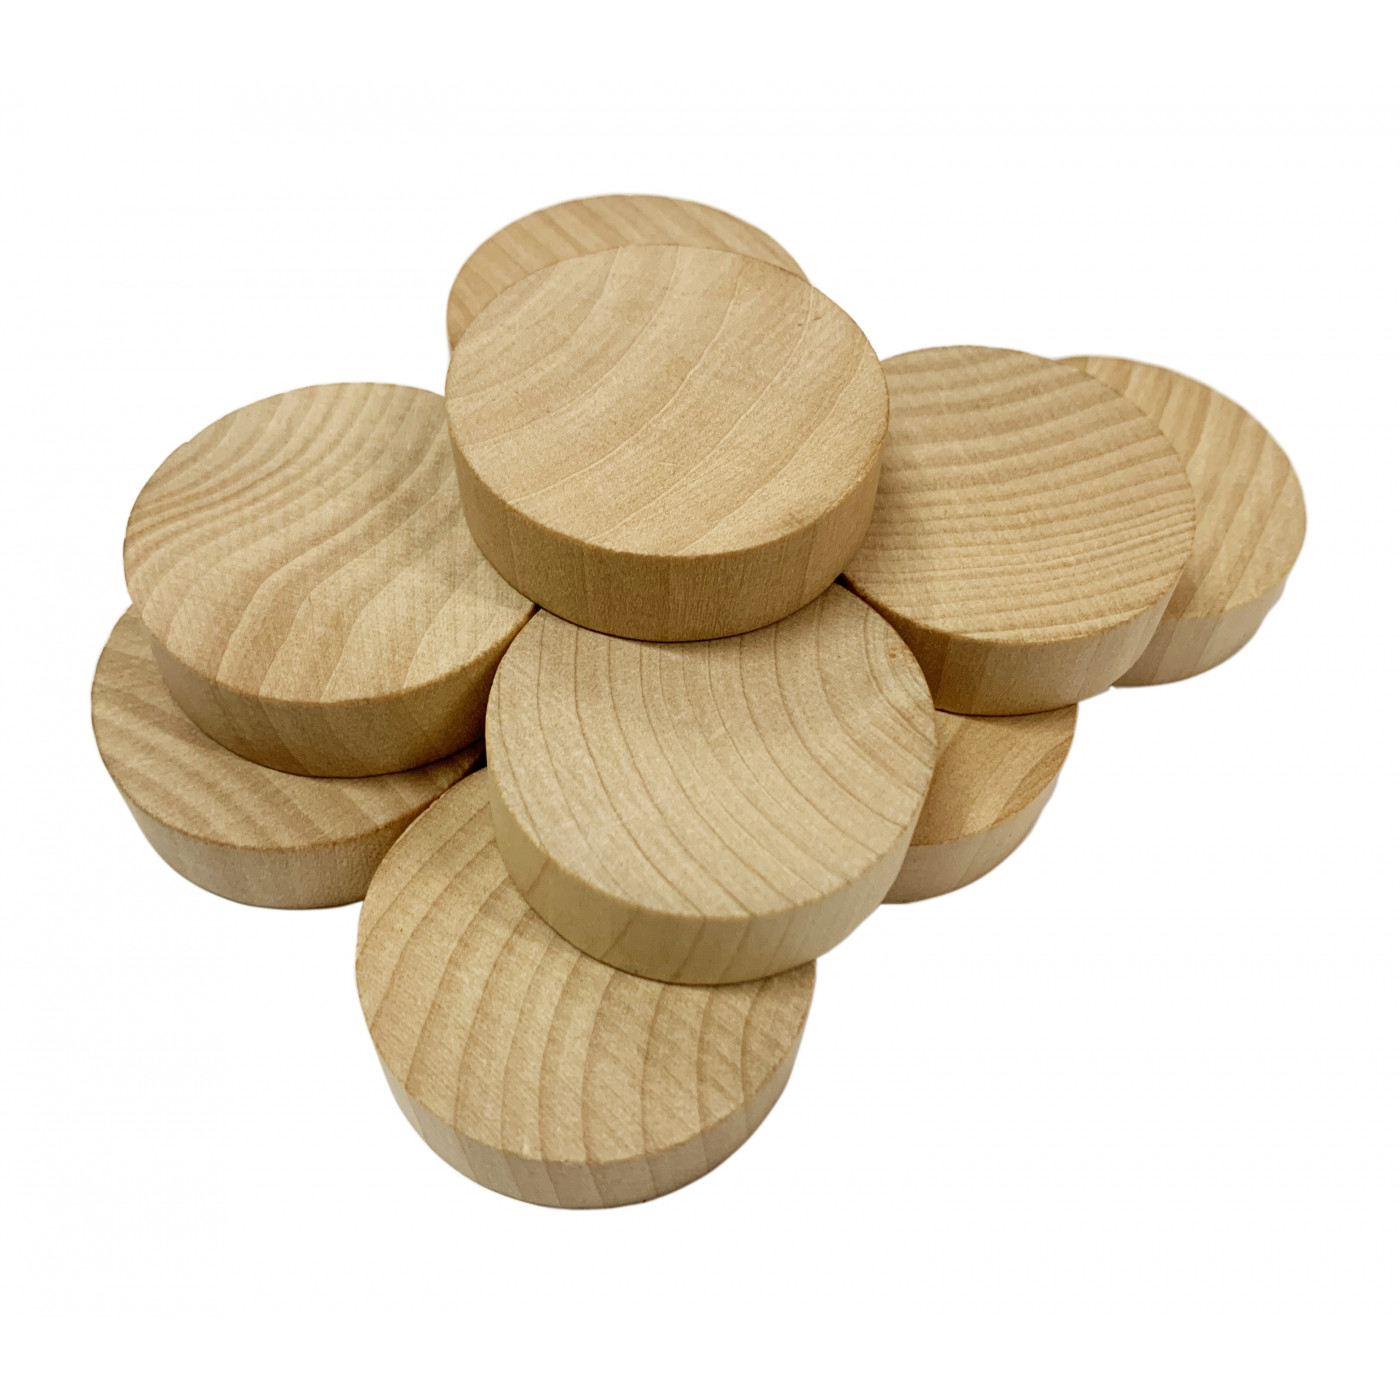 Juego de 100 discos de madera (diámetro: 4 cm, grosor: 12 mm